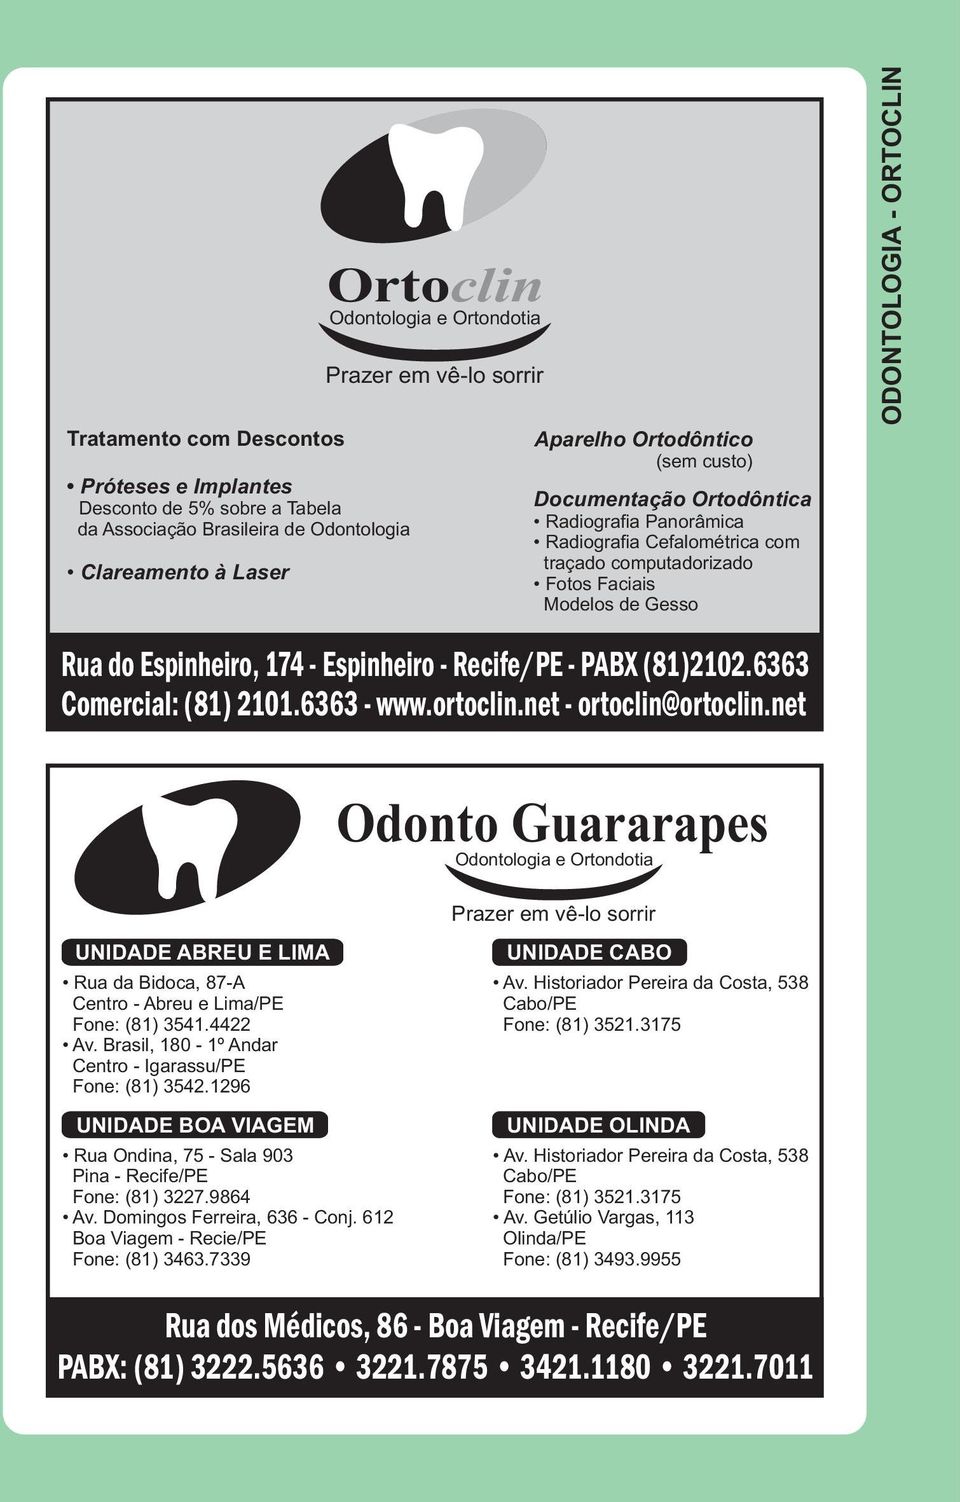 Espinheiro, 174 - Espinheiro - Recife/PE - PABX (81)2102.6363 Comercial: (81) 2101.6363 - www.ortoclin.net - ortoclin@ortoclin.